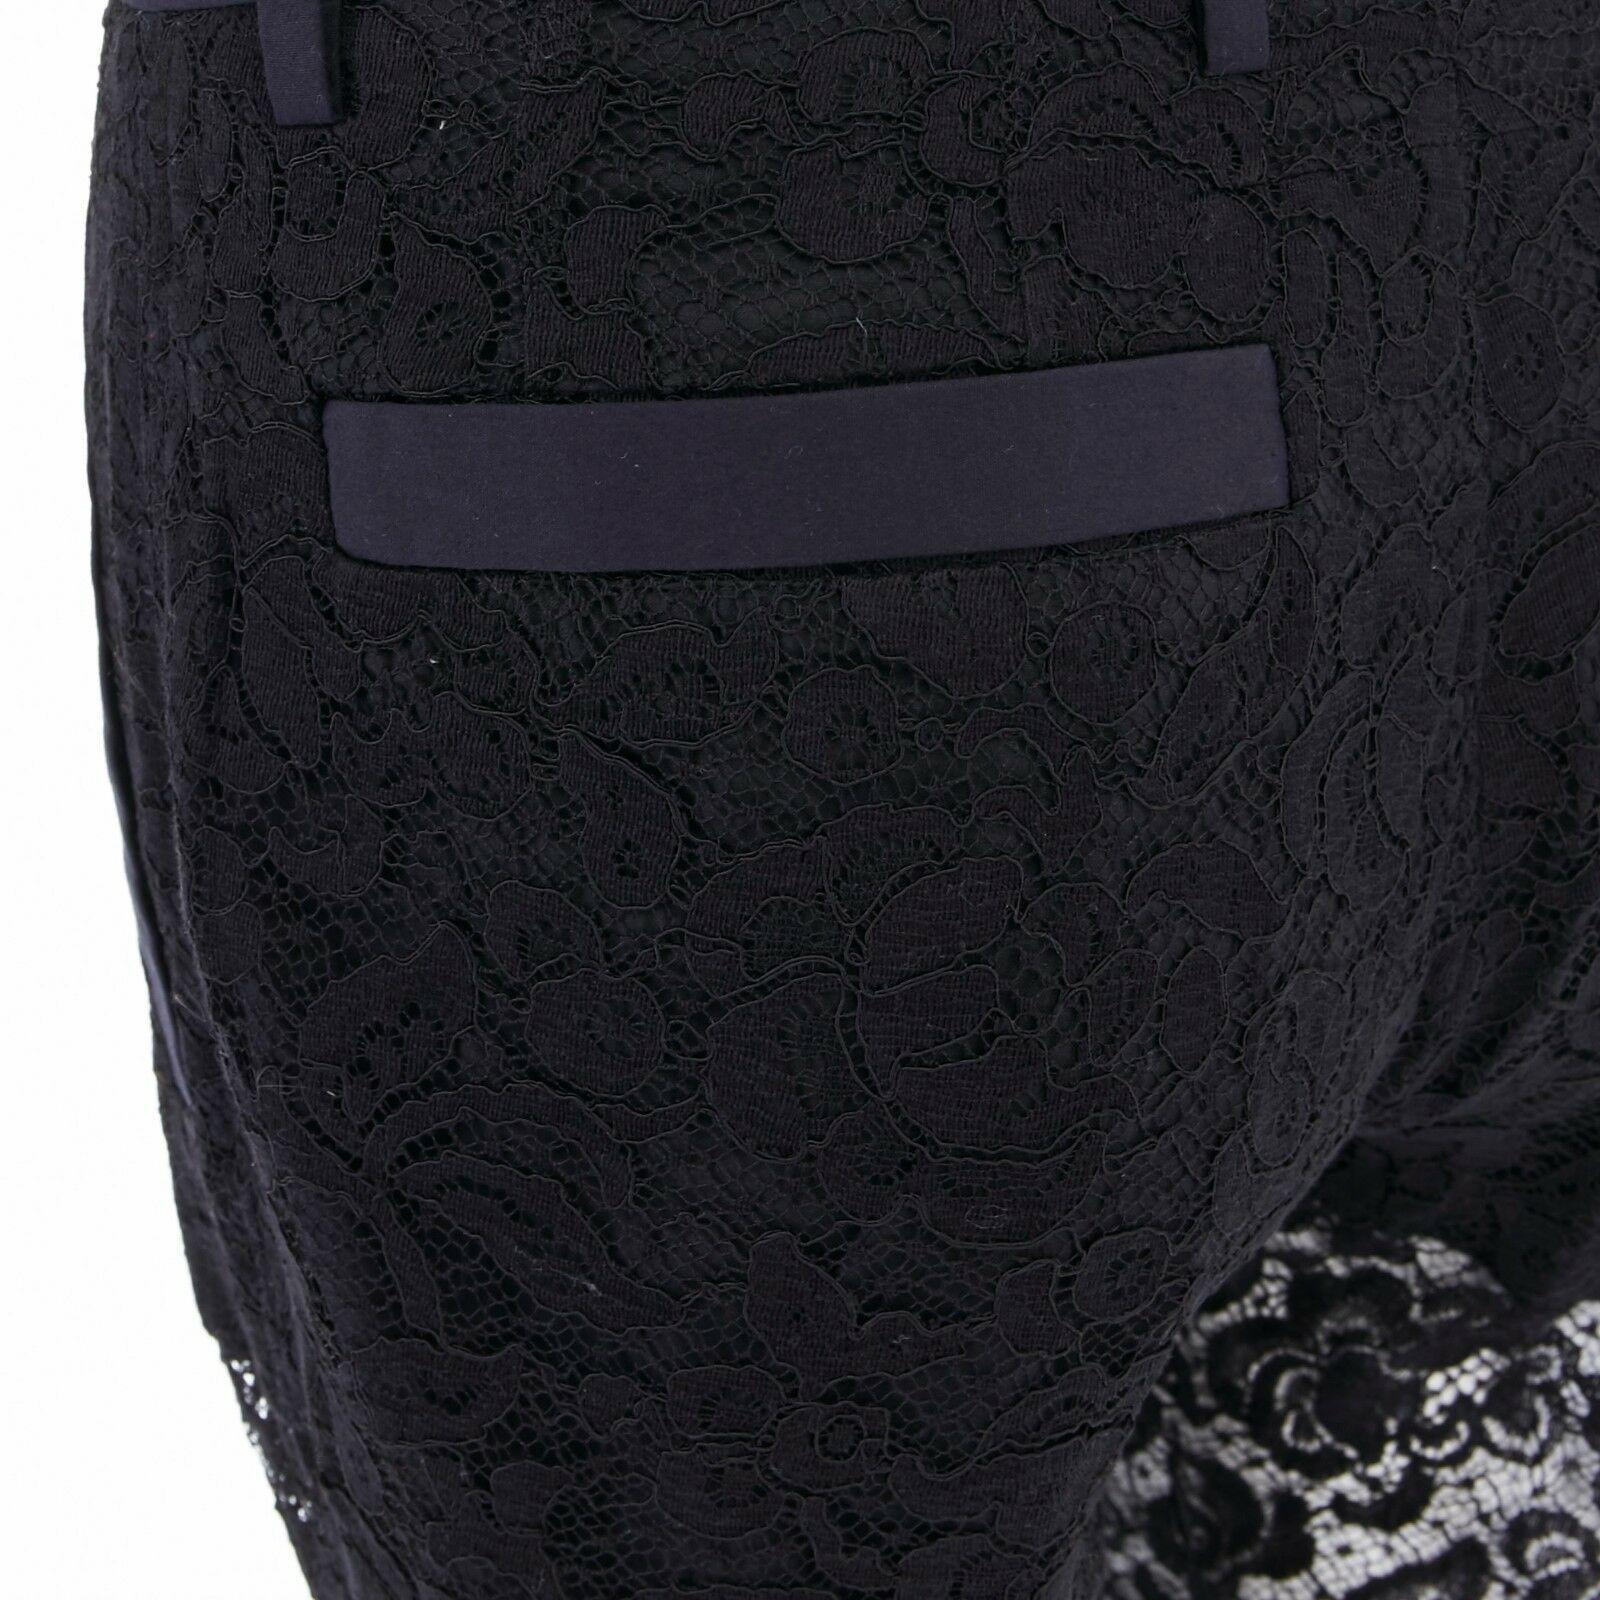 GIVENCHY TISCI black floral lace faux pocket trim shorts lined tux pants FR36 S 3